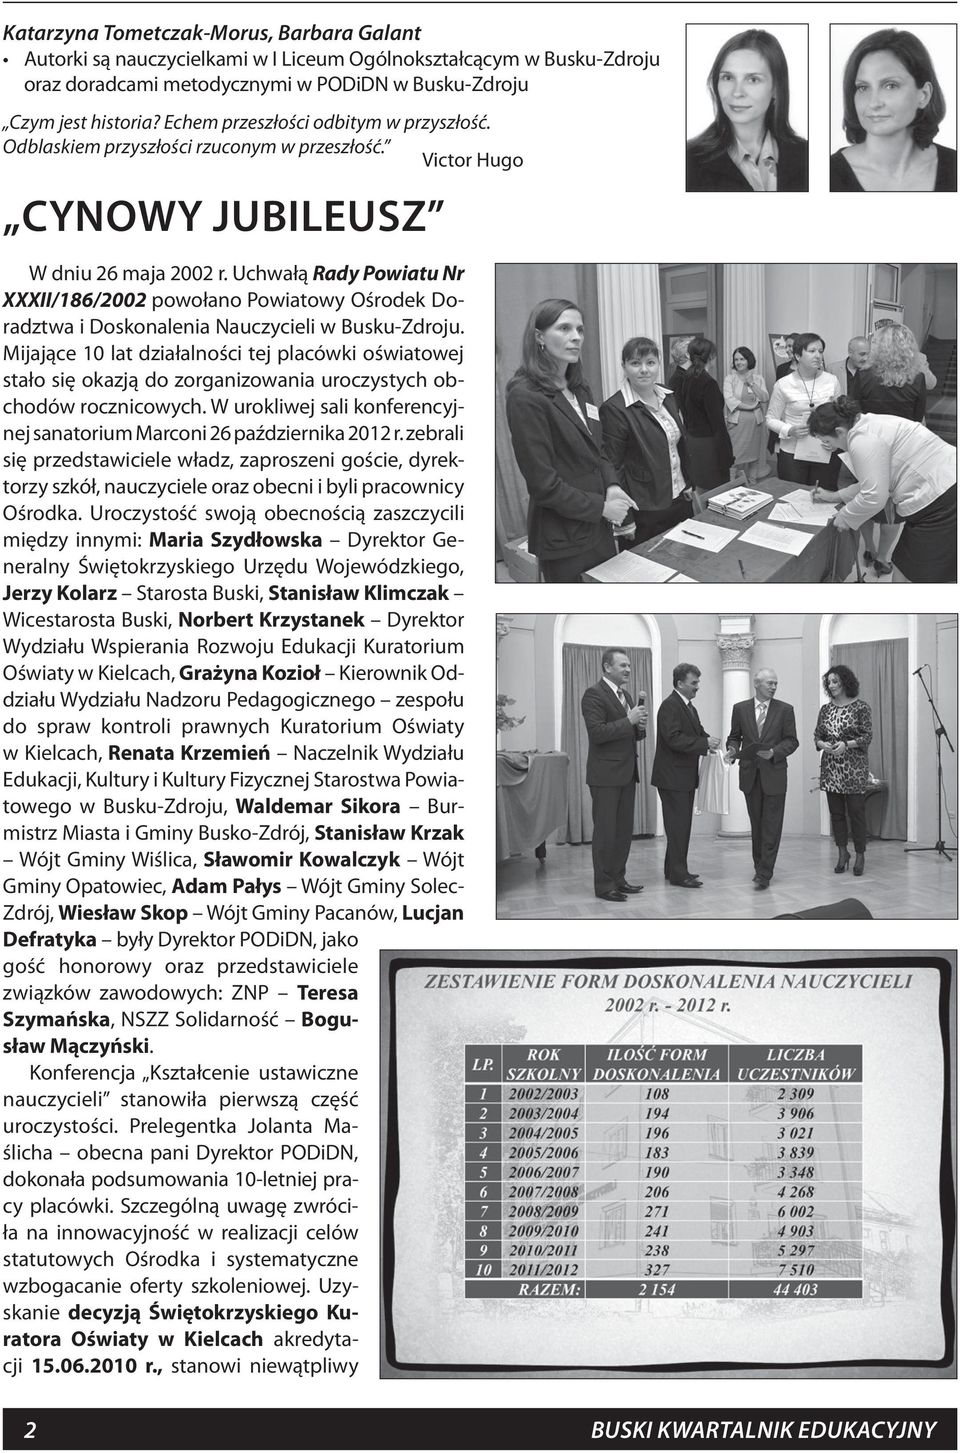 Uchwałą Rady Powiatu Nr XXXII/186/2002 powołano Powiatowy Ośrodek Doradztwa i Doskonalenia Nauczycieli w Busku-Zdroju.